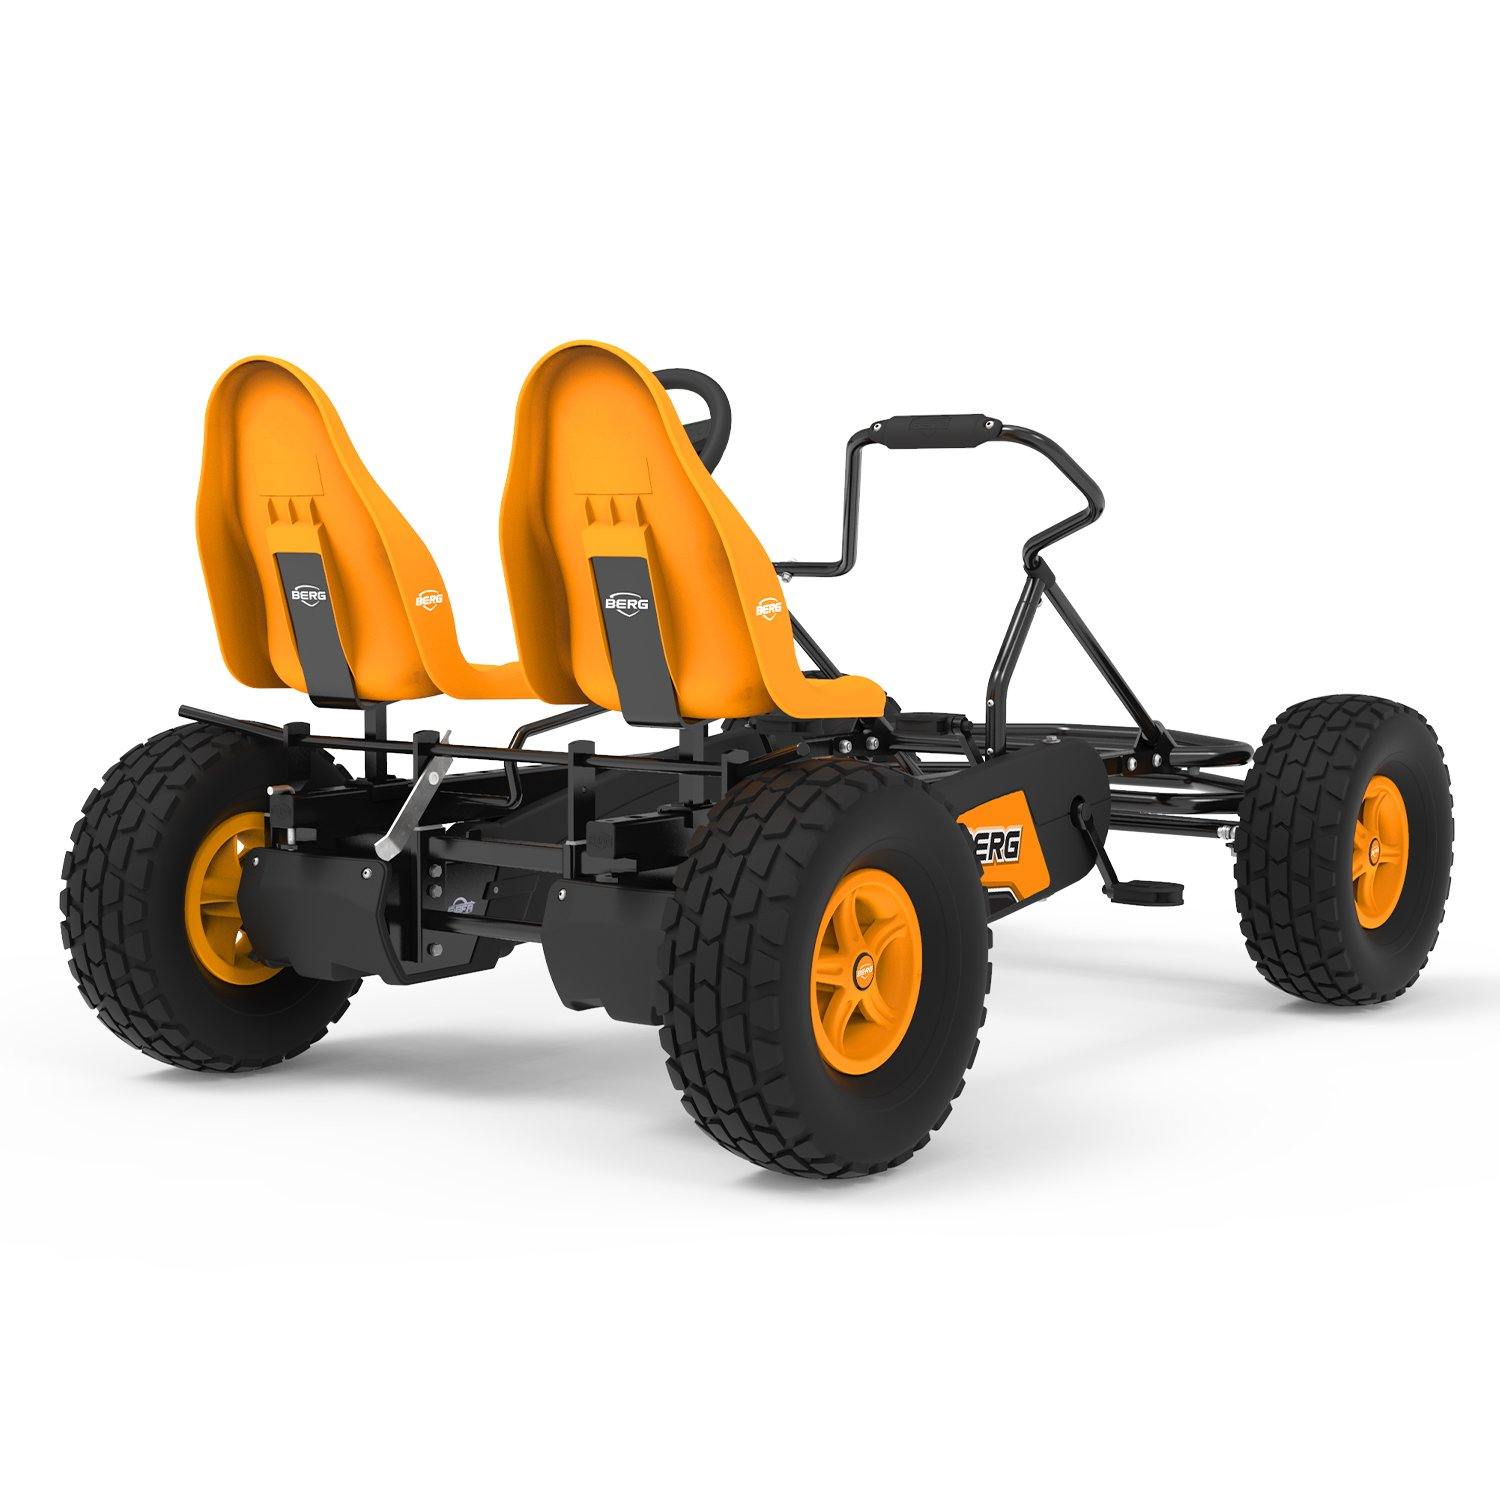 Berg X-Plore E-Bfr Pedal Go Kart - Outside Play